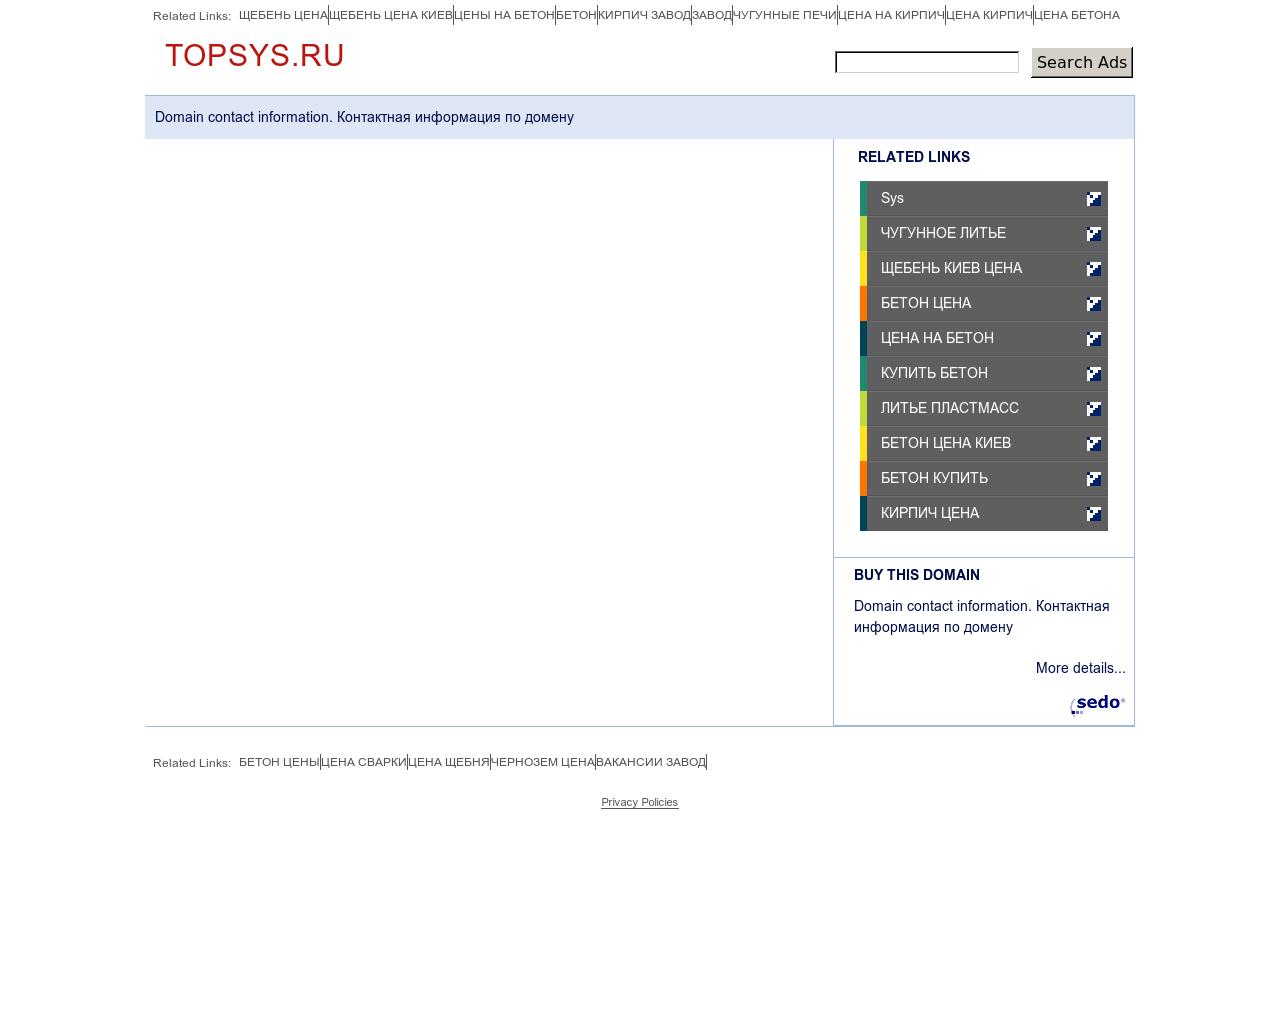 Изображение сайта topsys.ru в разрешении 1280x1024